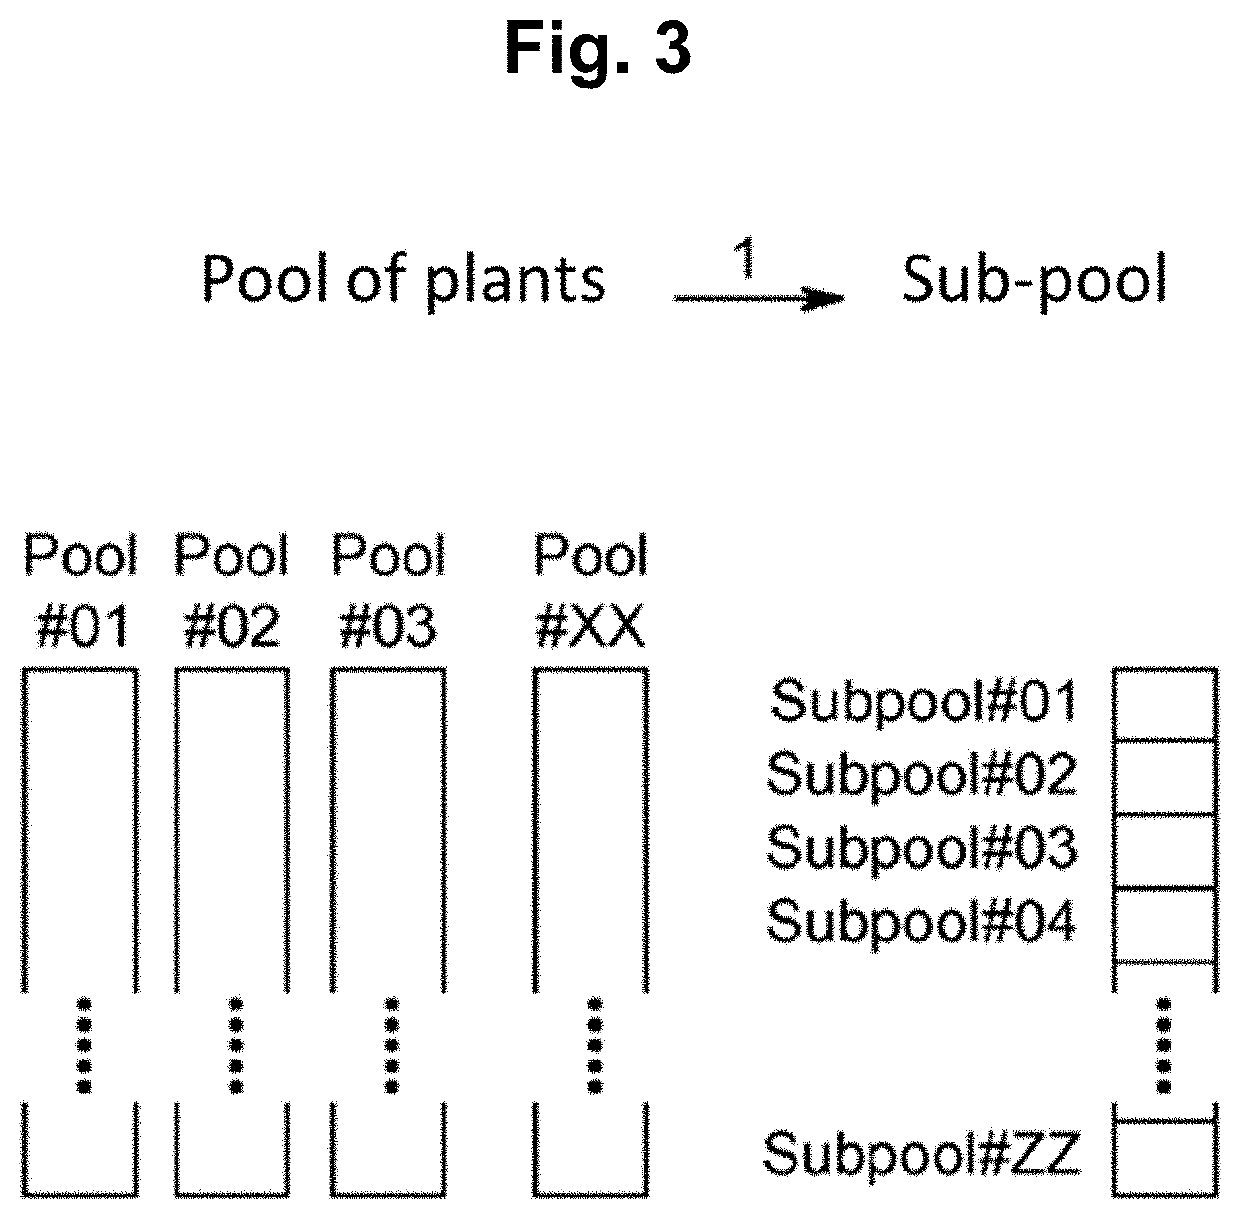 Methods for preparing mutant plants or microorganisms